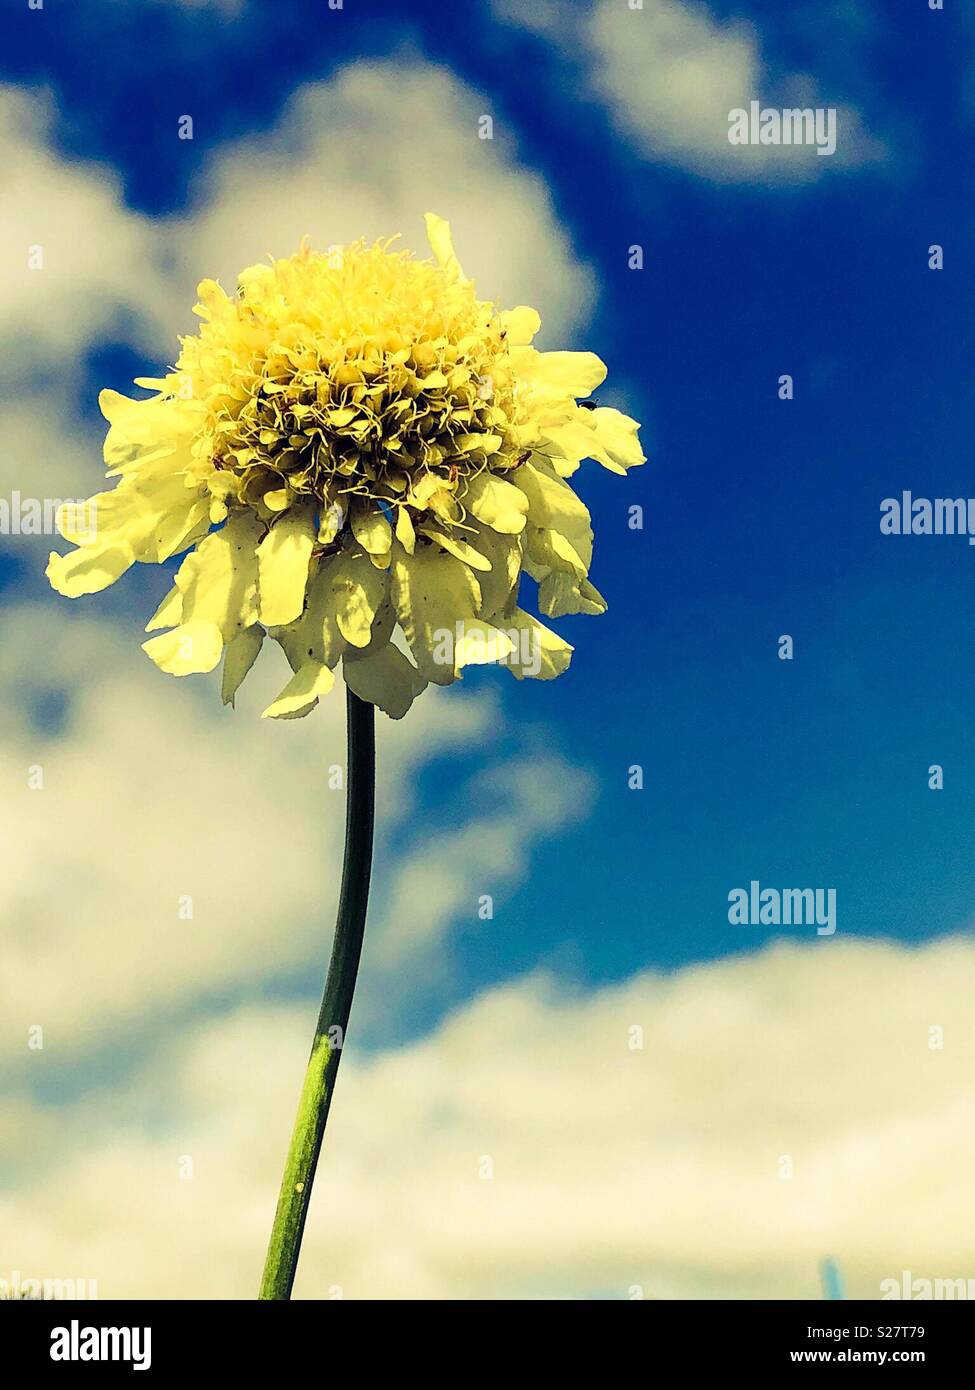 Riesige, gelbe scabious Blume der Sonne. Vor einem blauen Himmel mit weißen Wolken gezeigt Stockfoto